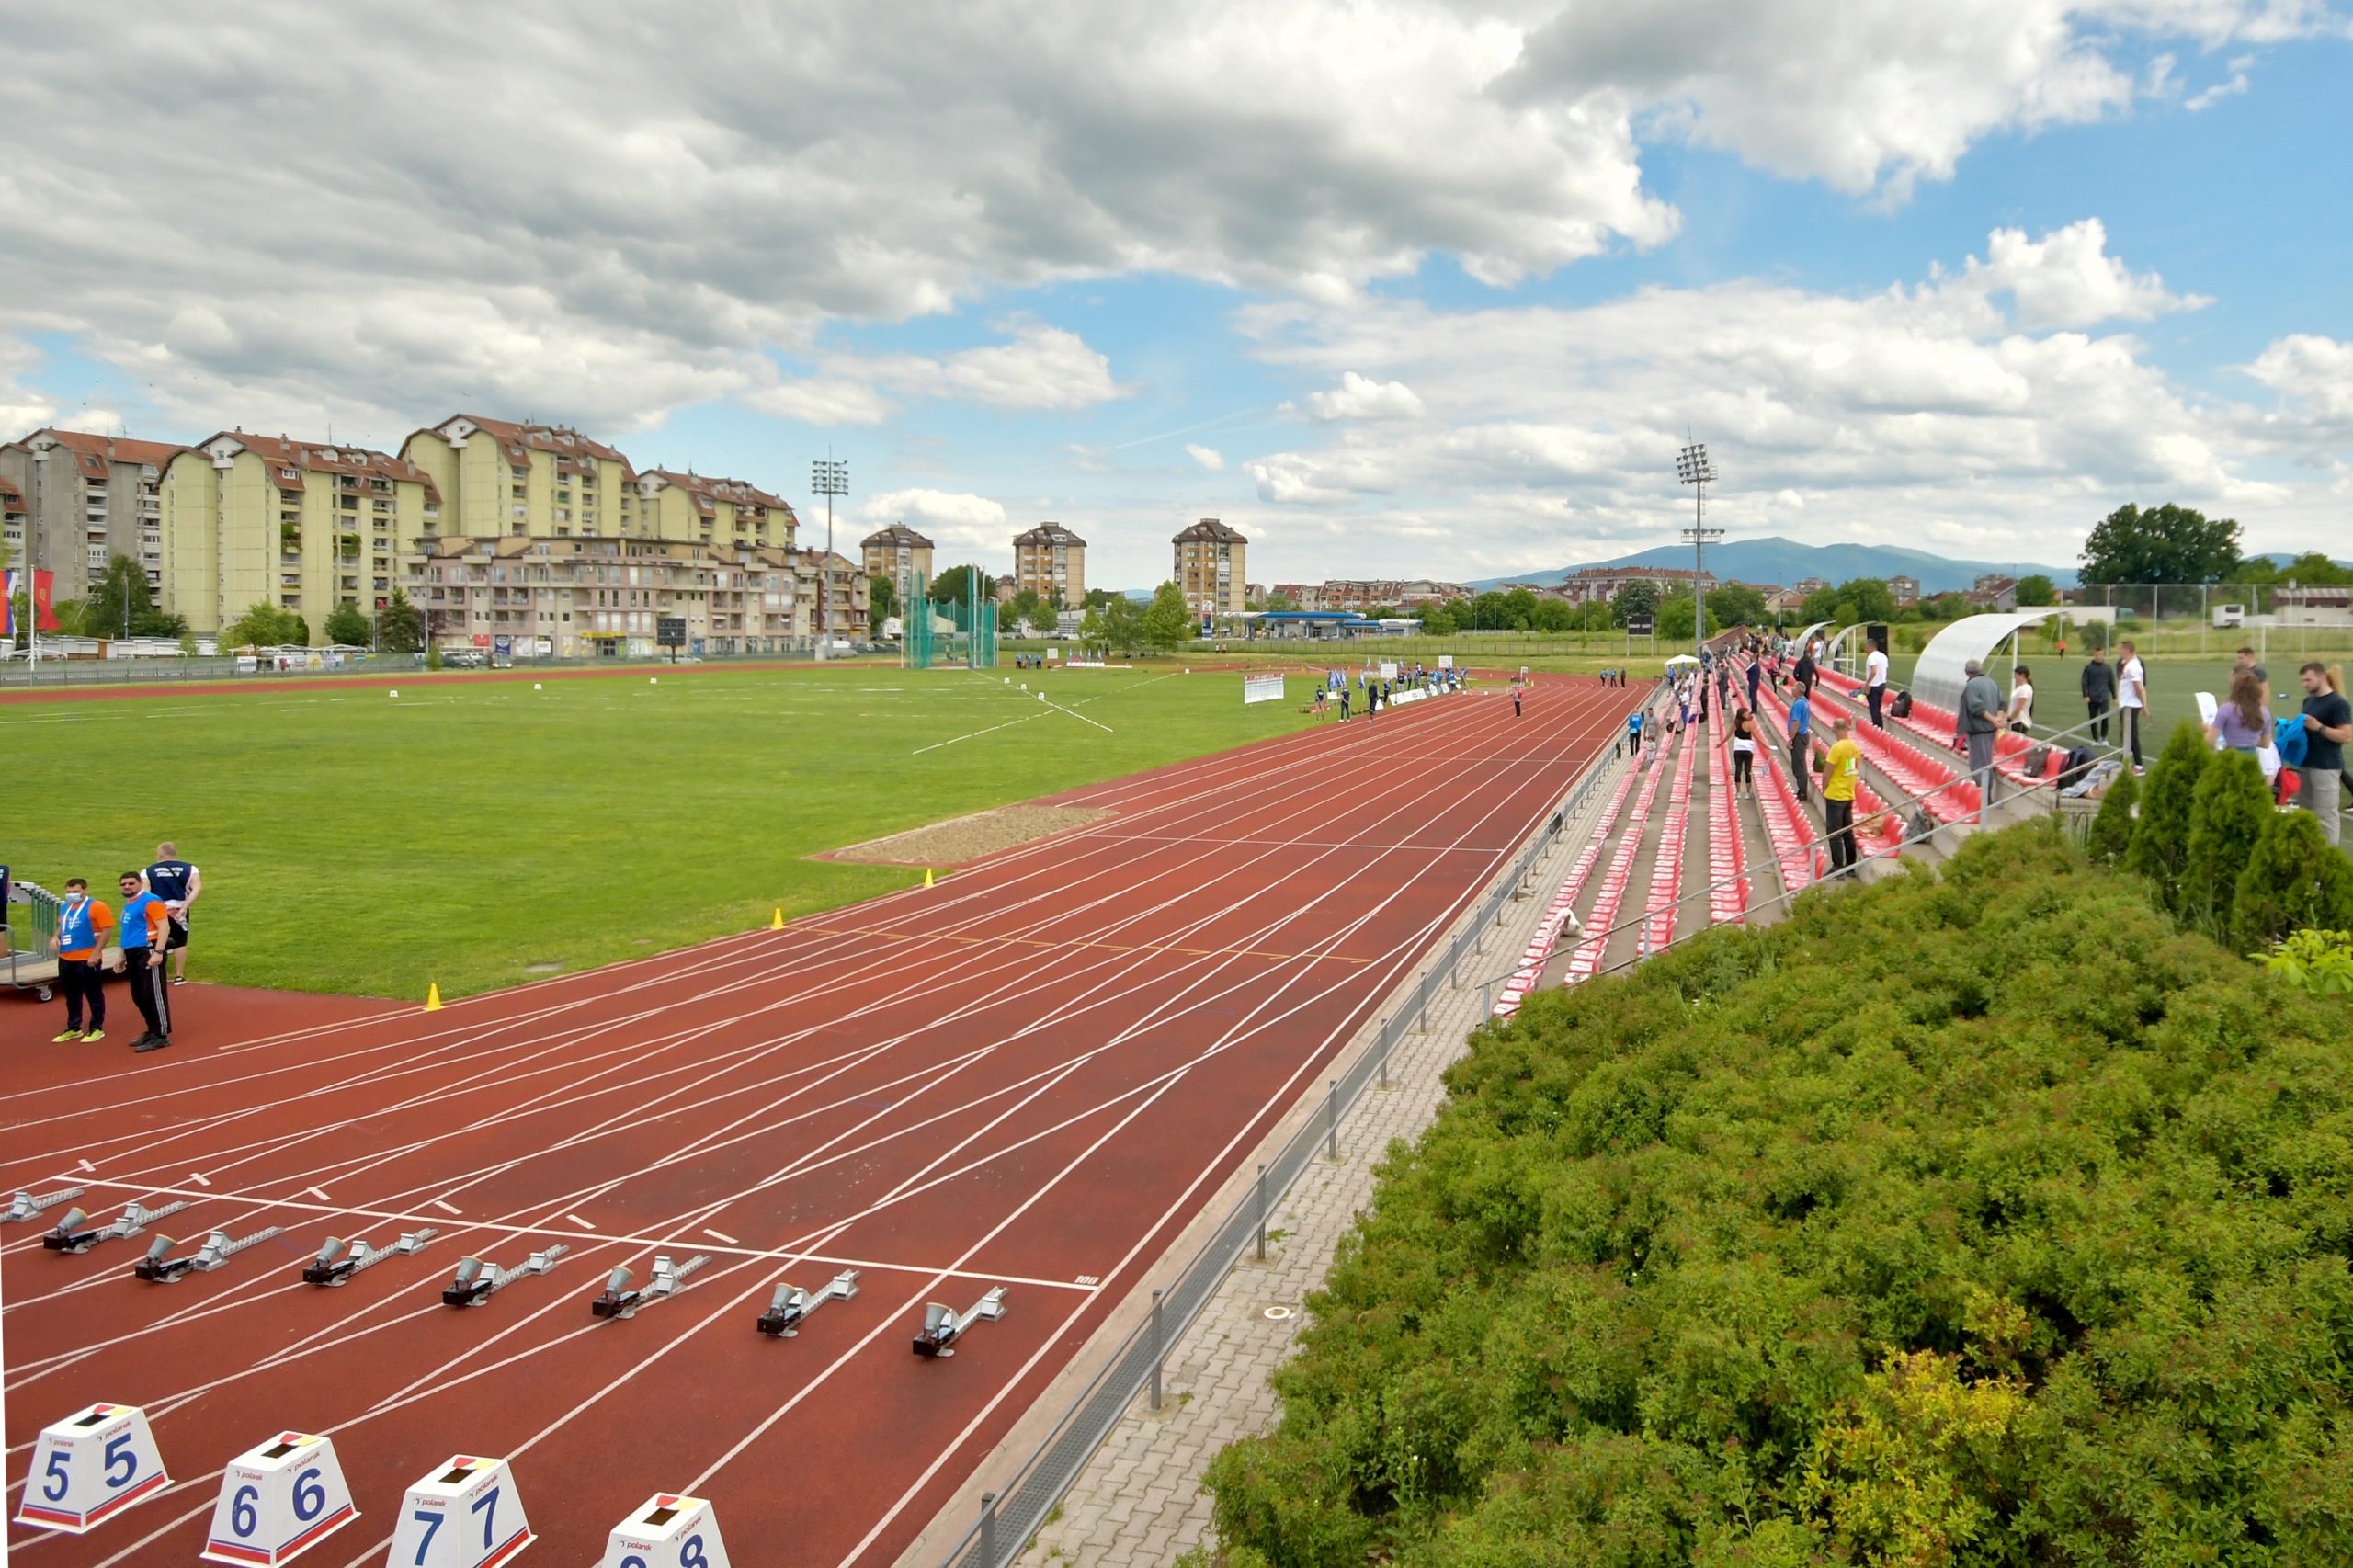 Atletski stadion Kruševac 2021 - U20 Prvenstvo Srbije